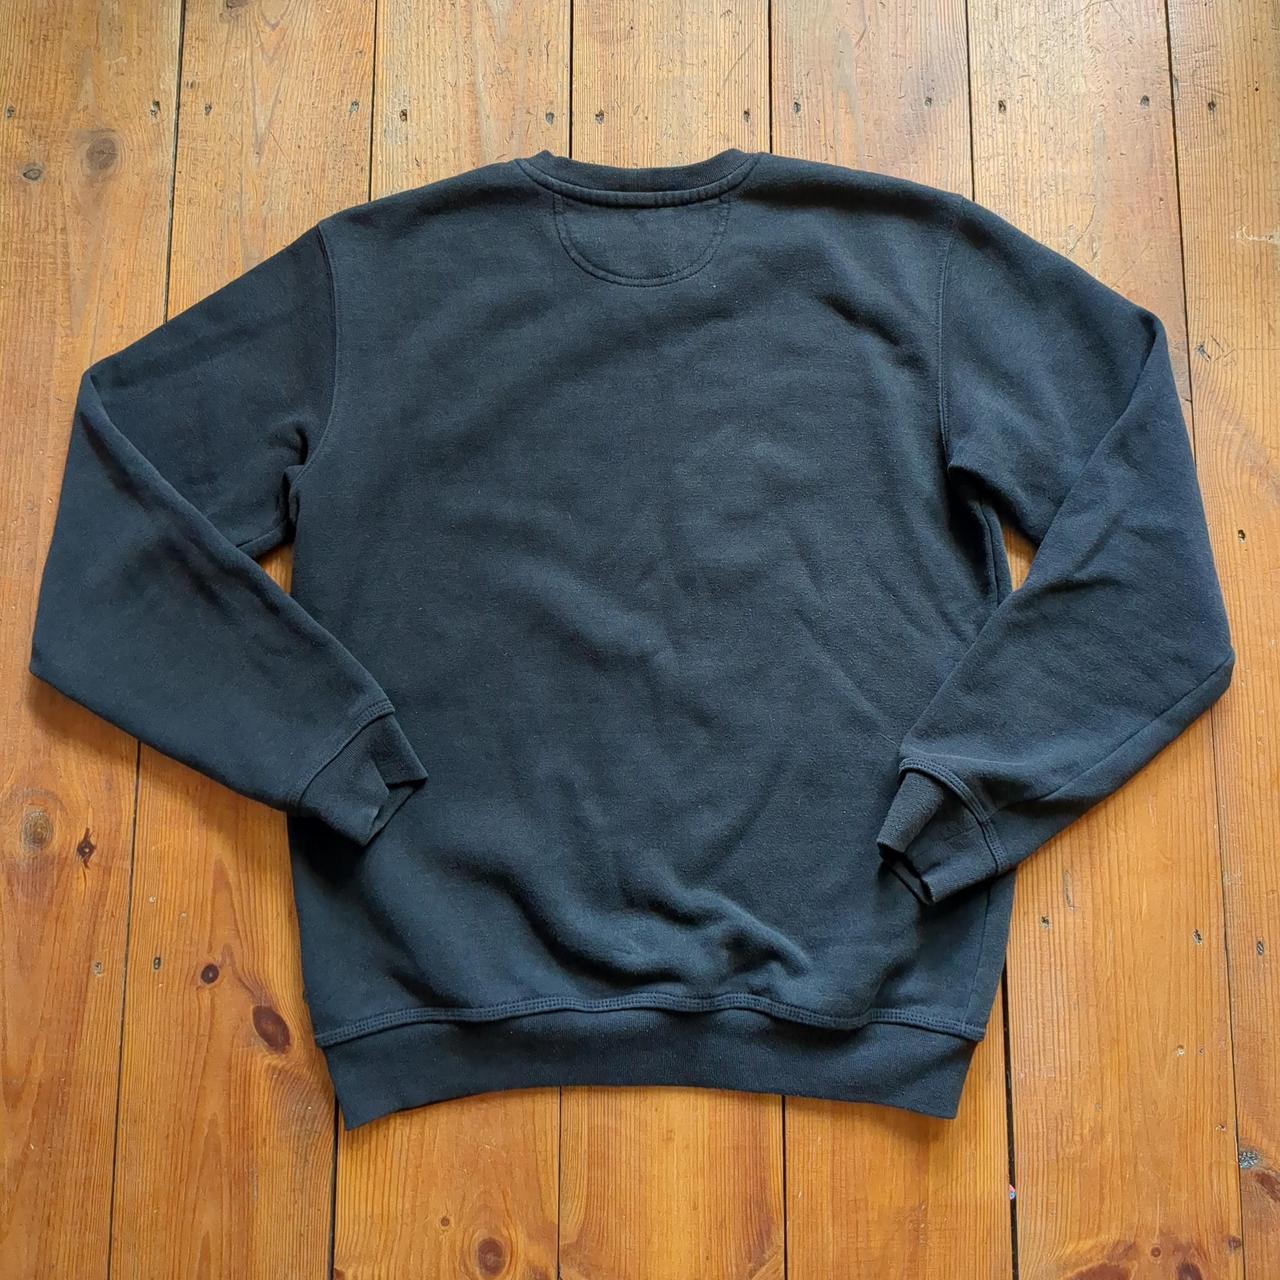 Black faded Carhartt jumper - Size Small but fits... - Depop